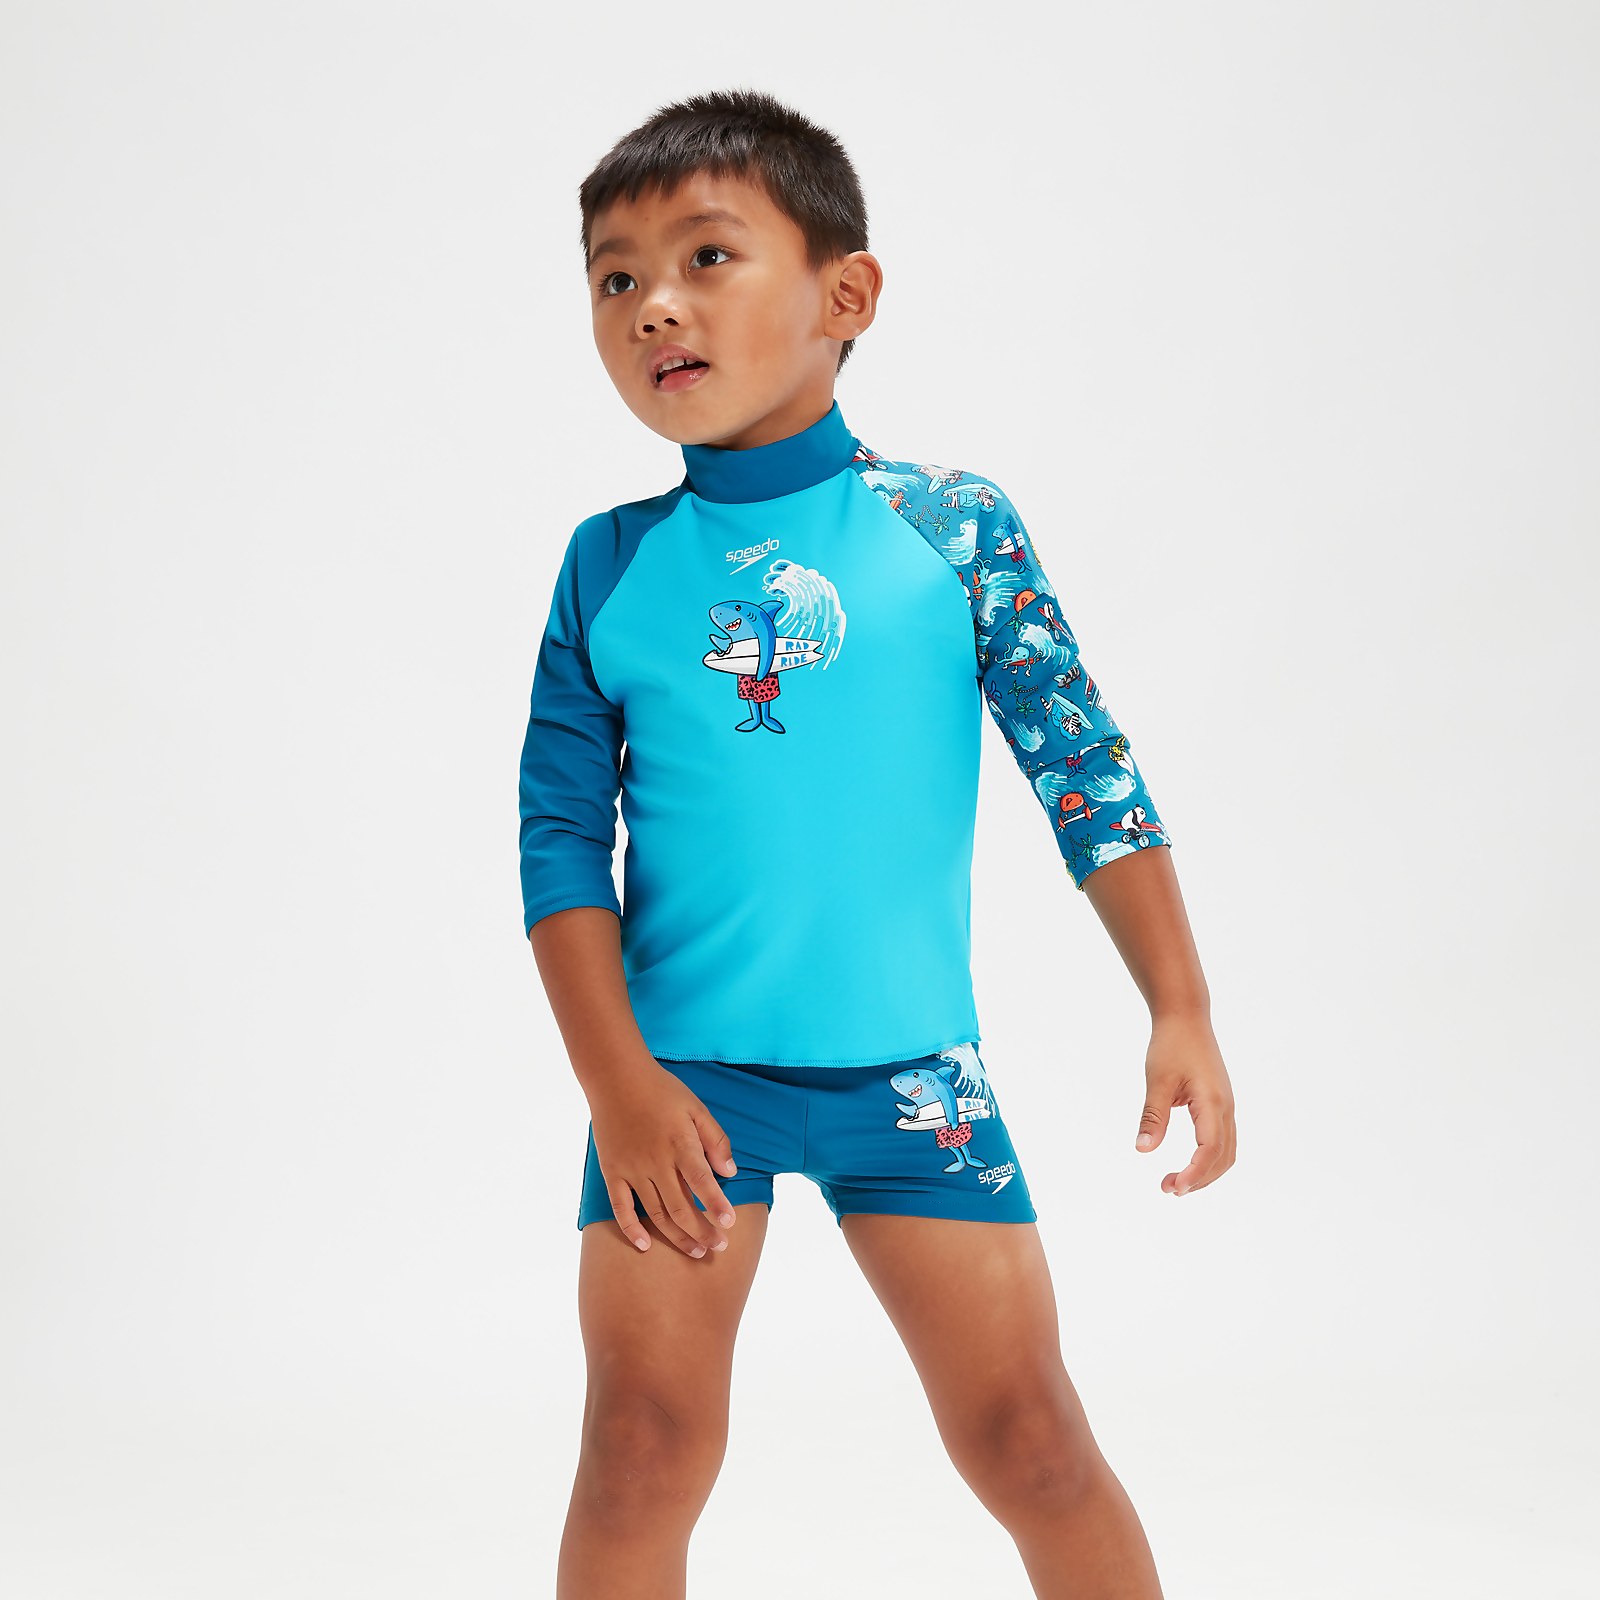 Bedrucktes Rash-Top mit langen Ärmeln für Jungen im Kleinkindalter Blau